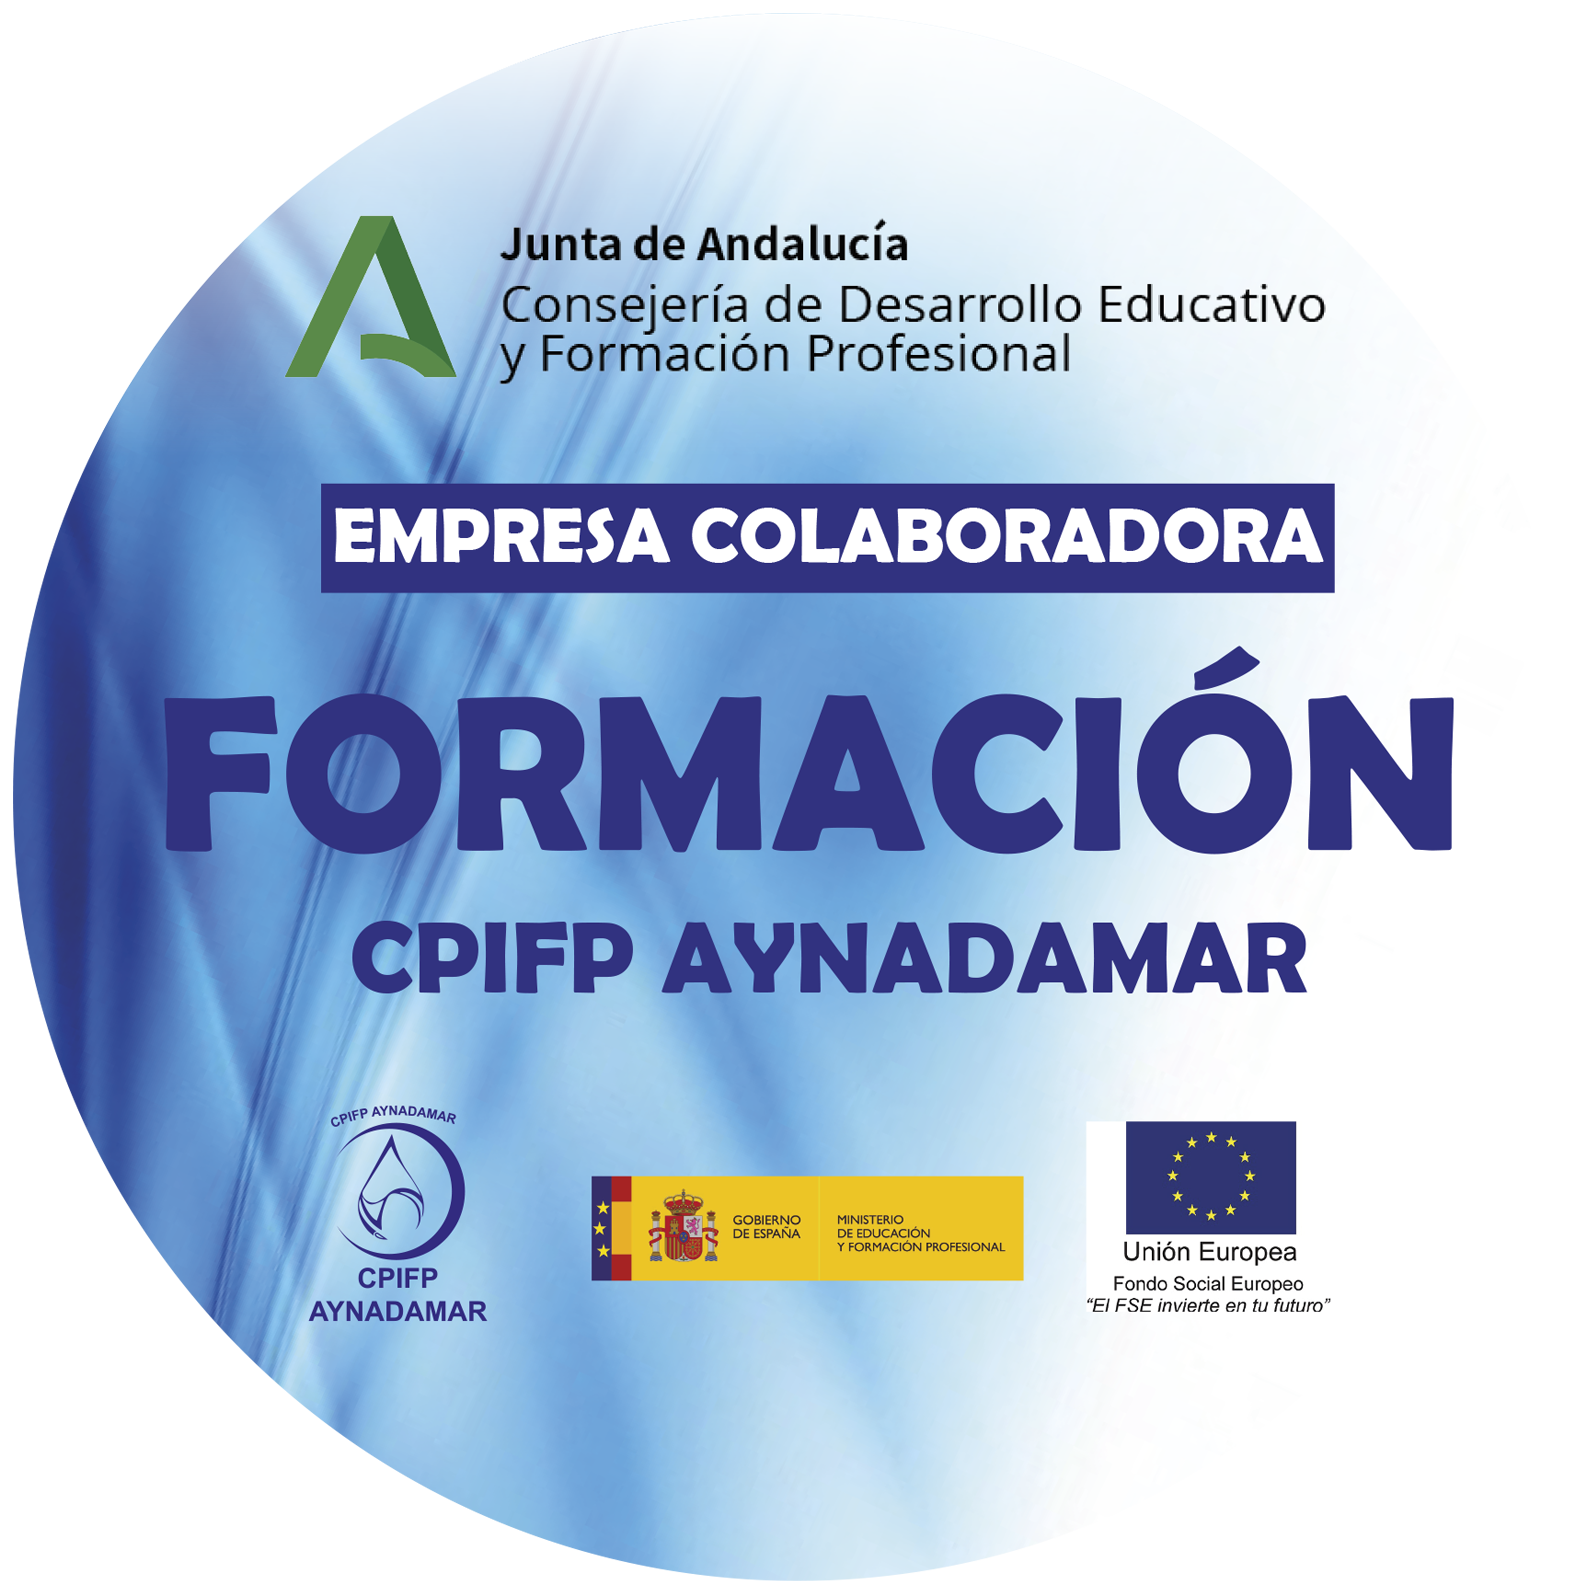 Empresa colaboradora en Formacin CPIFP Aynadamar-Junta de Andaluca